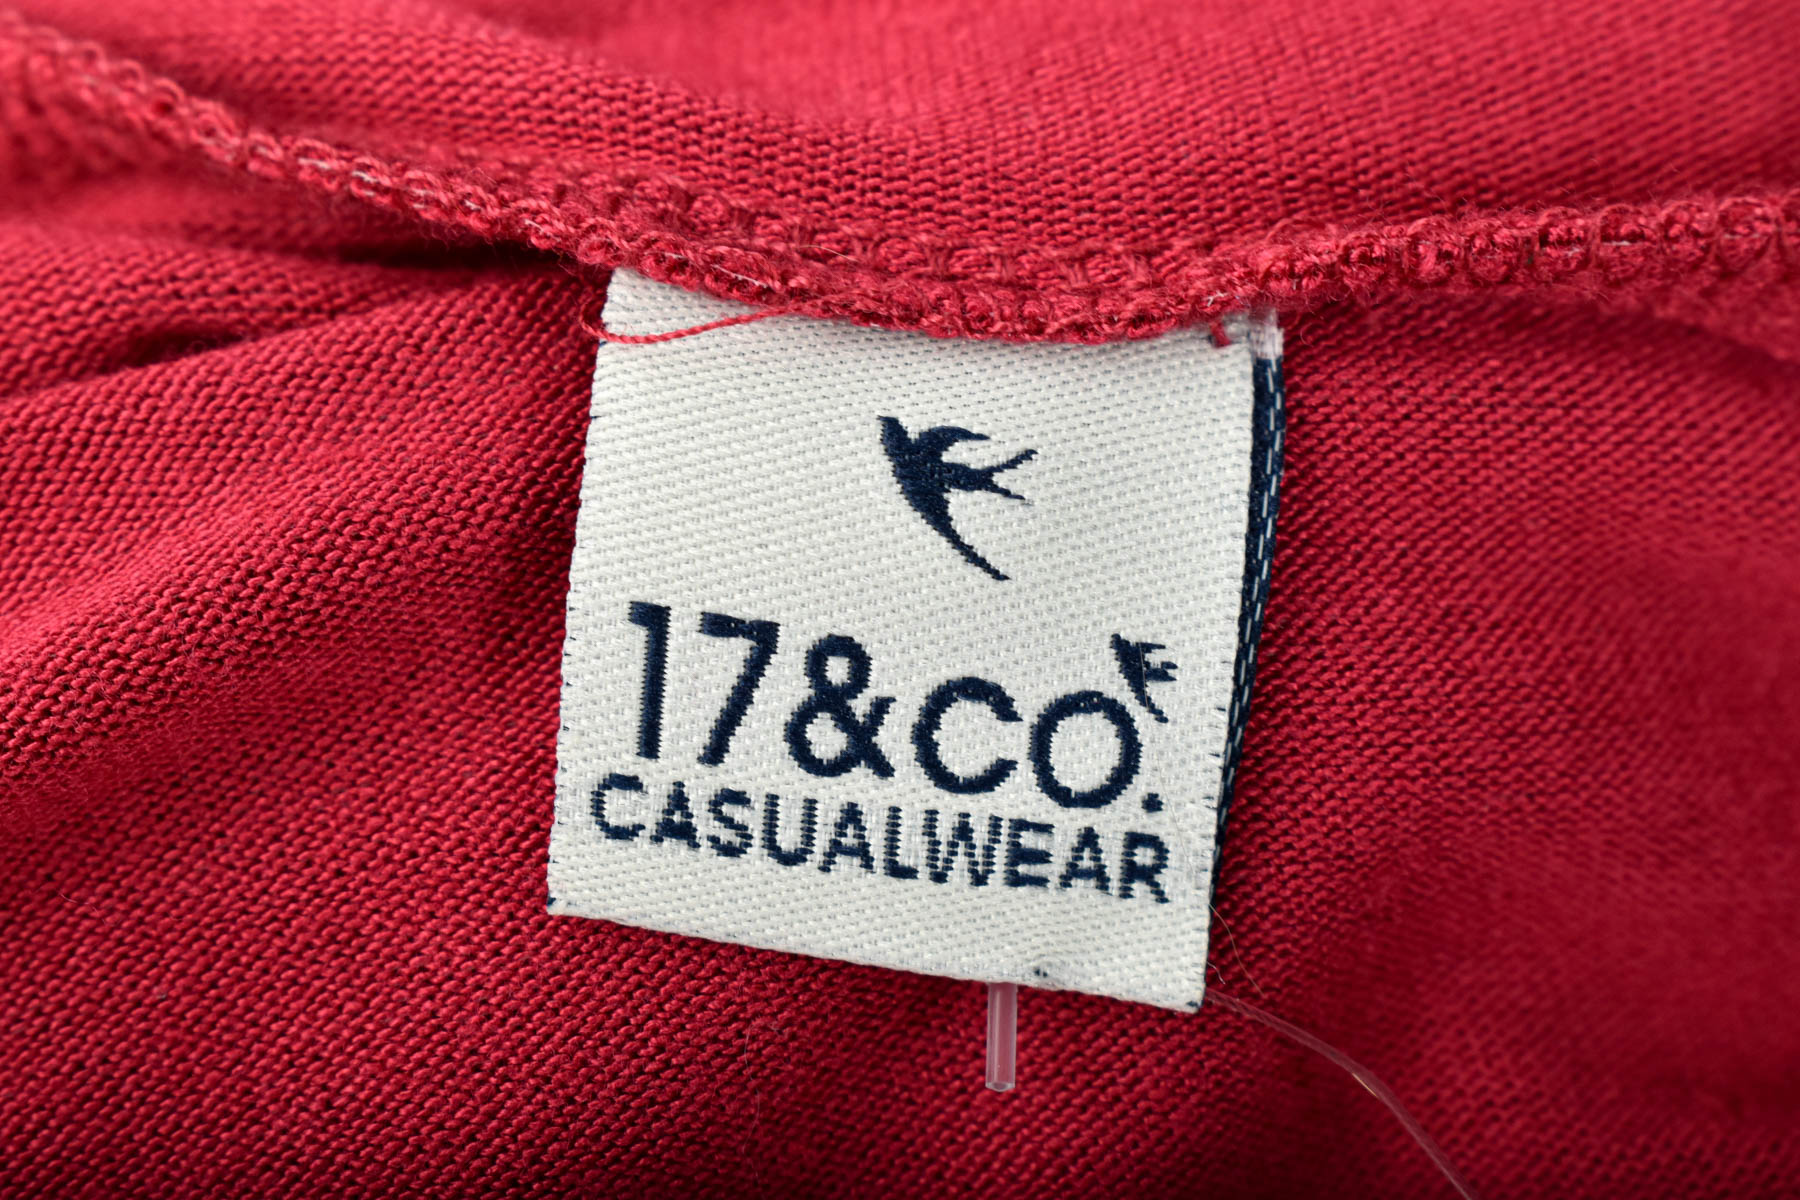 Cardigan / Jachetă de damă - 17&CO. CASUALWEAR - 2